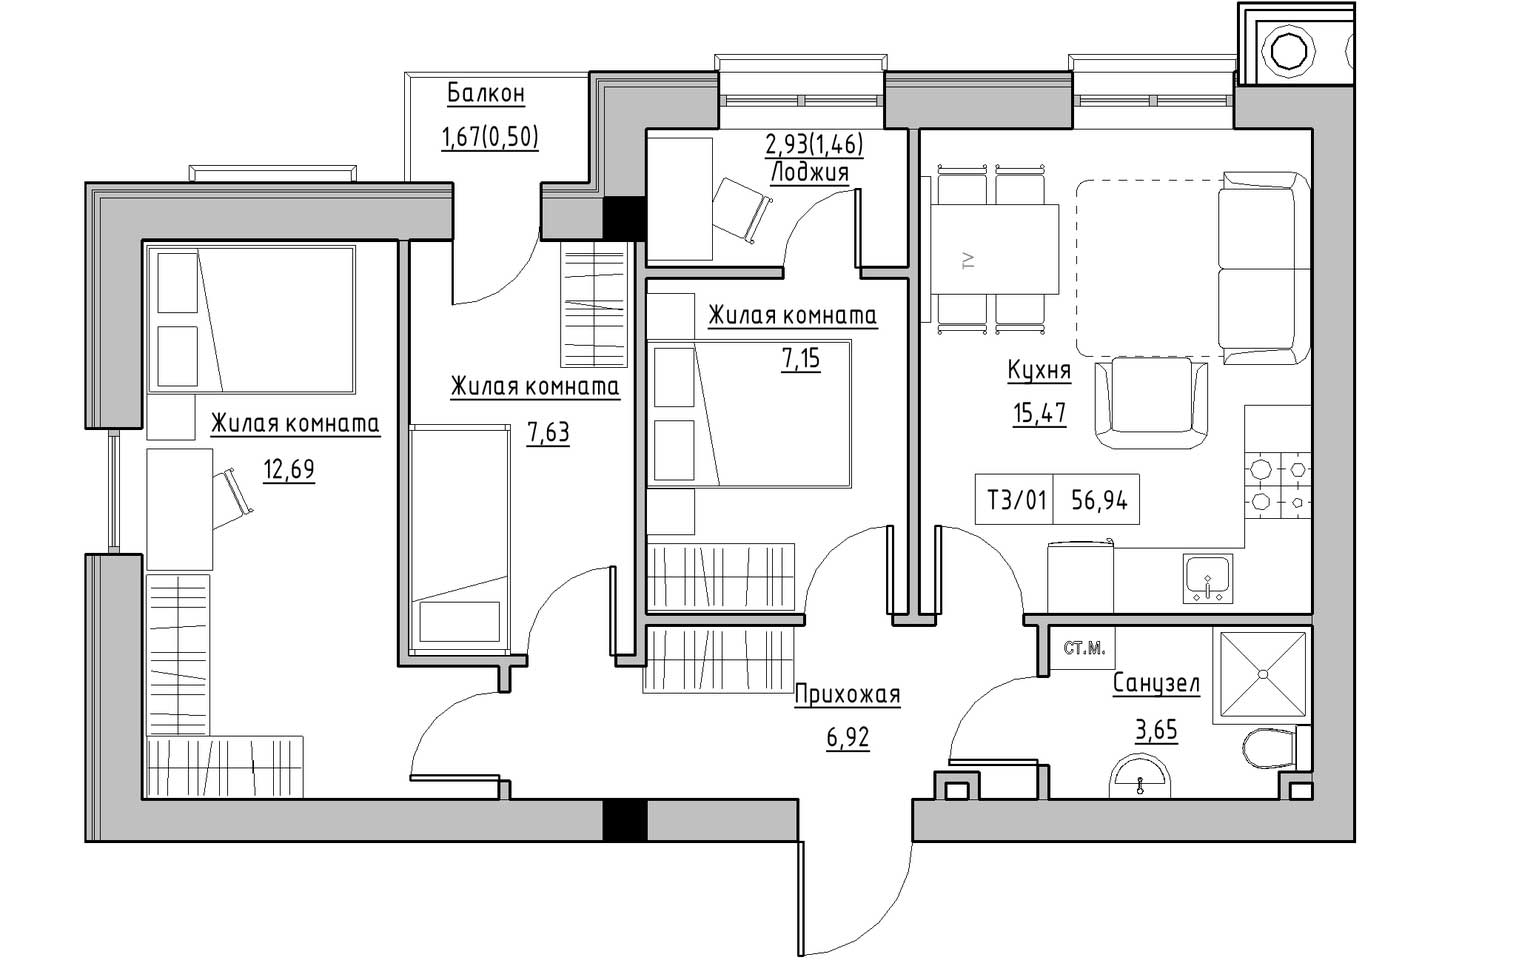 Планування 3-к квартира площею 56.94м2, KS-009-02/0006.